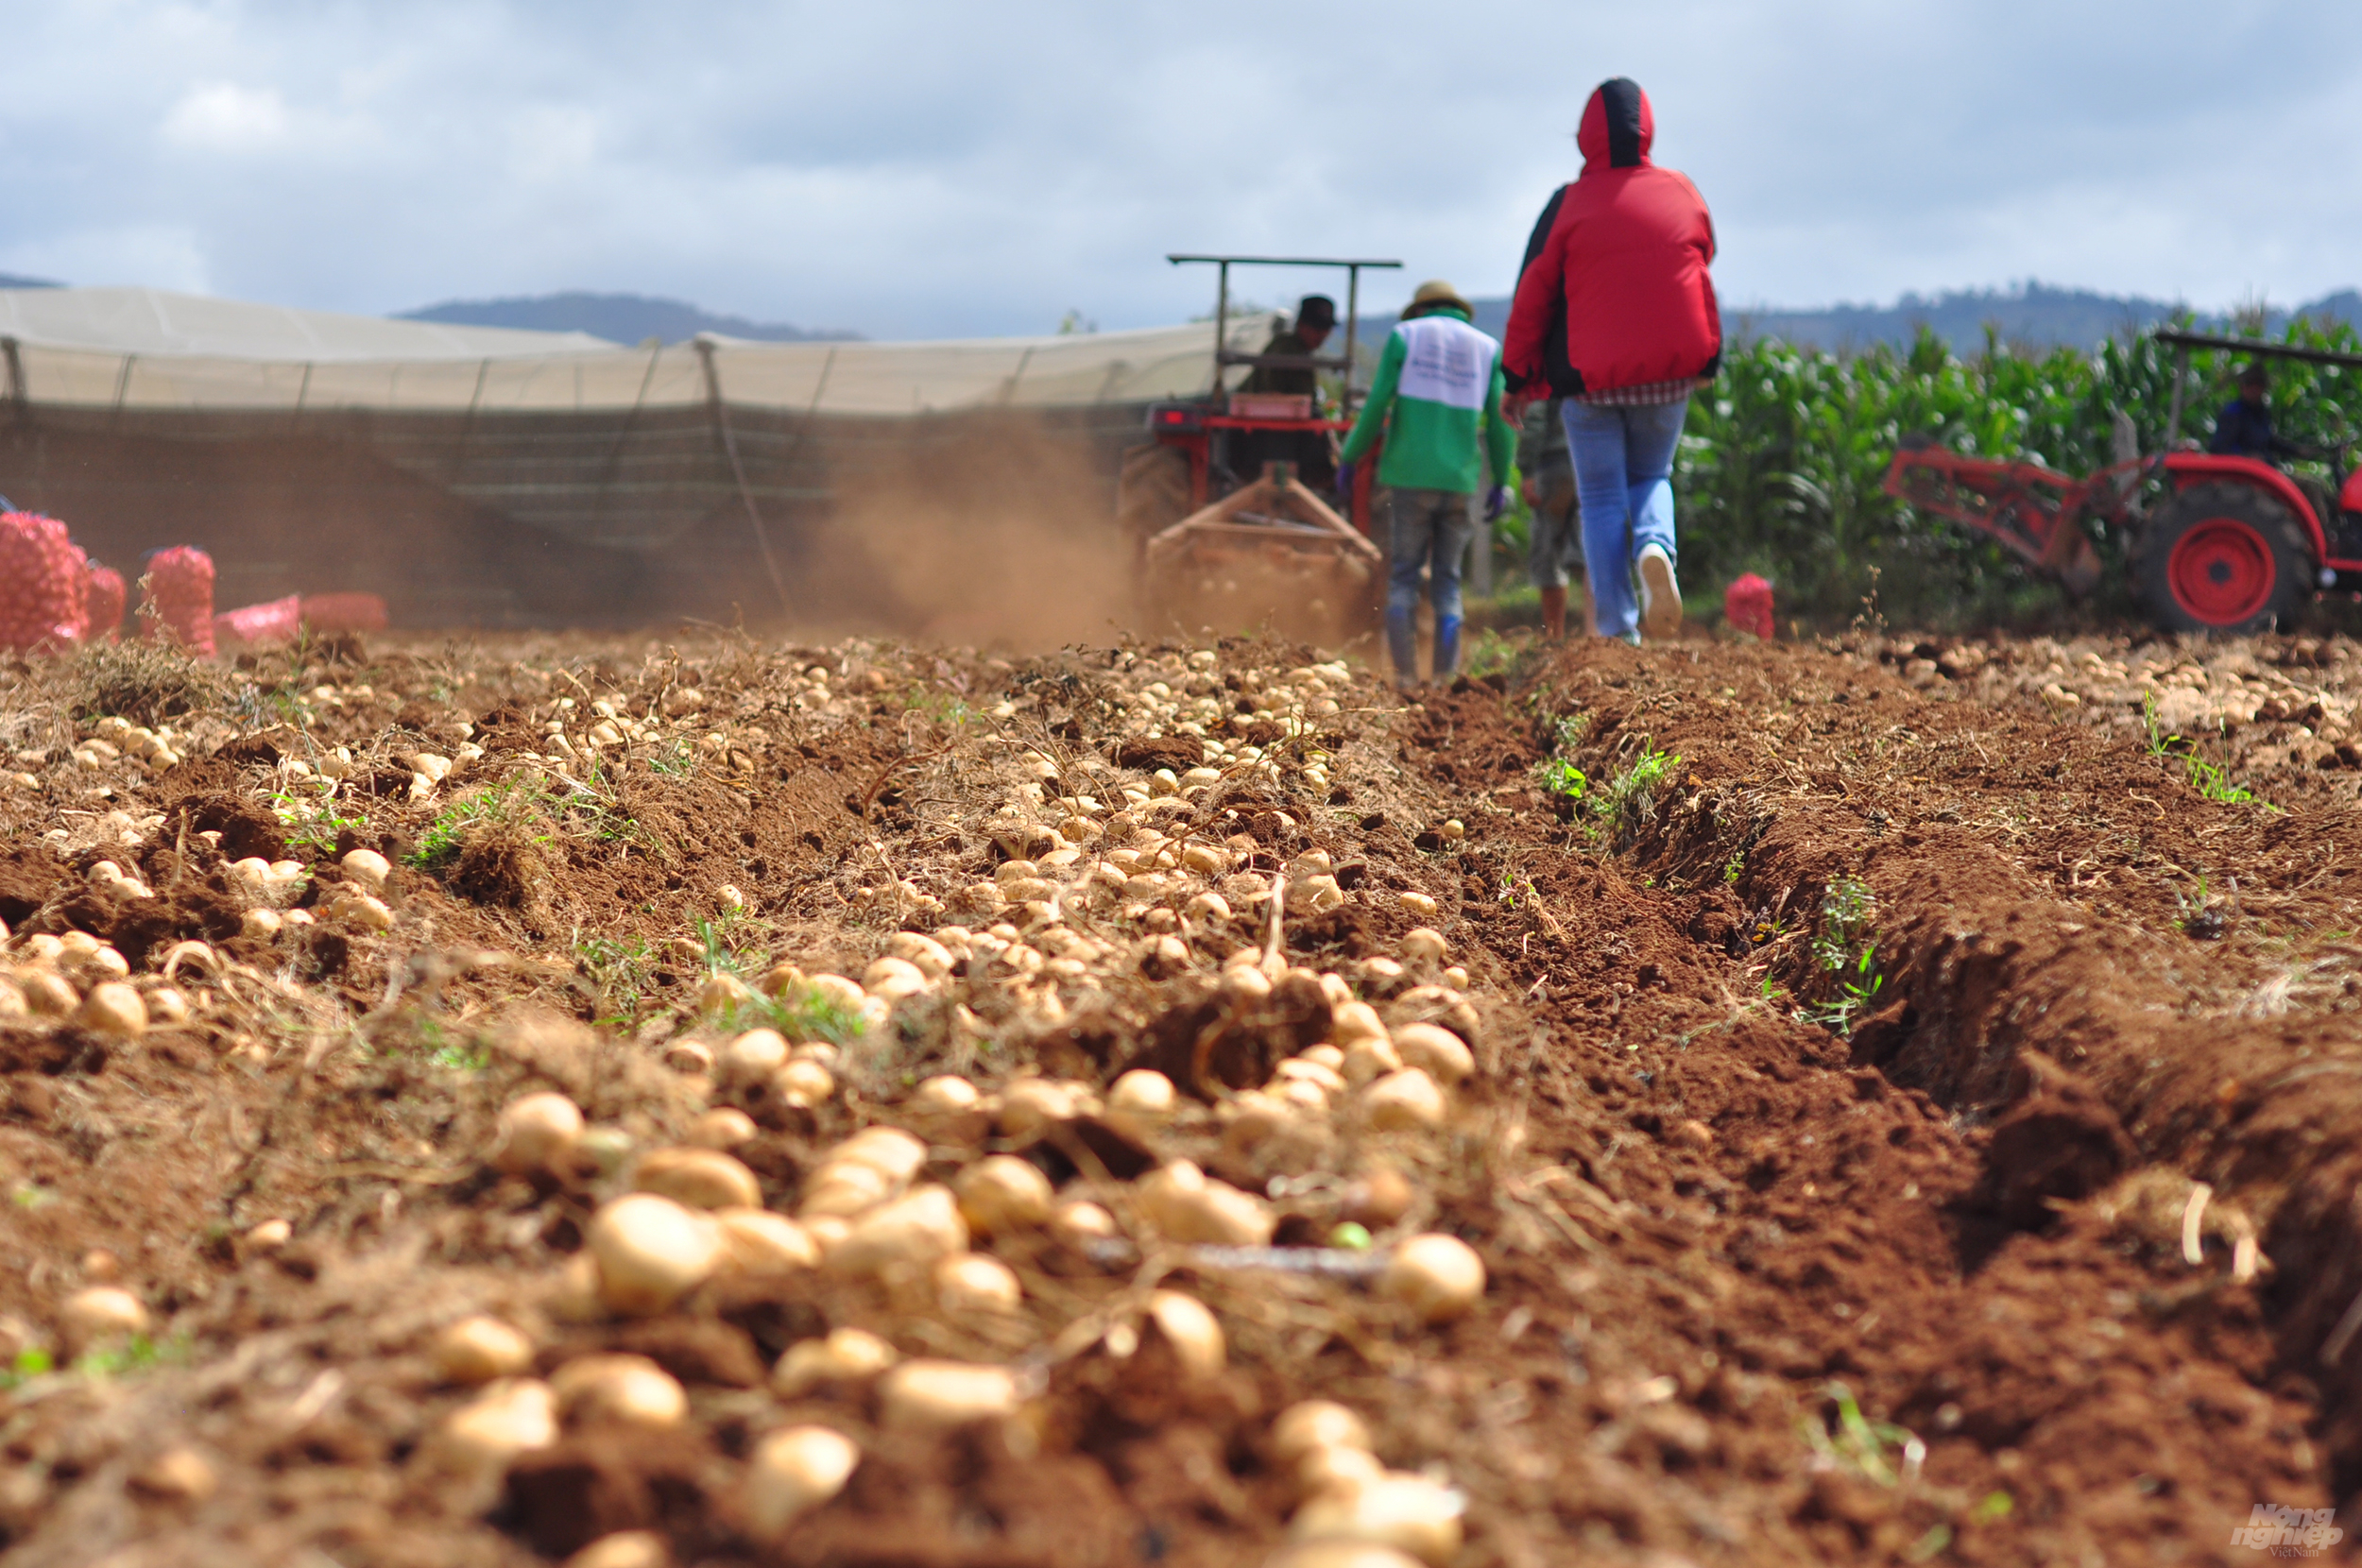 Chi phí đầu tư cho mỗi sào khoai tây ở vào khoảng 3,5-4,5 triệu đồng.